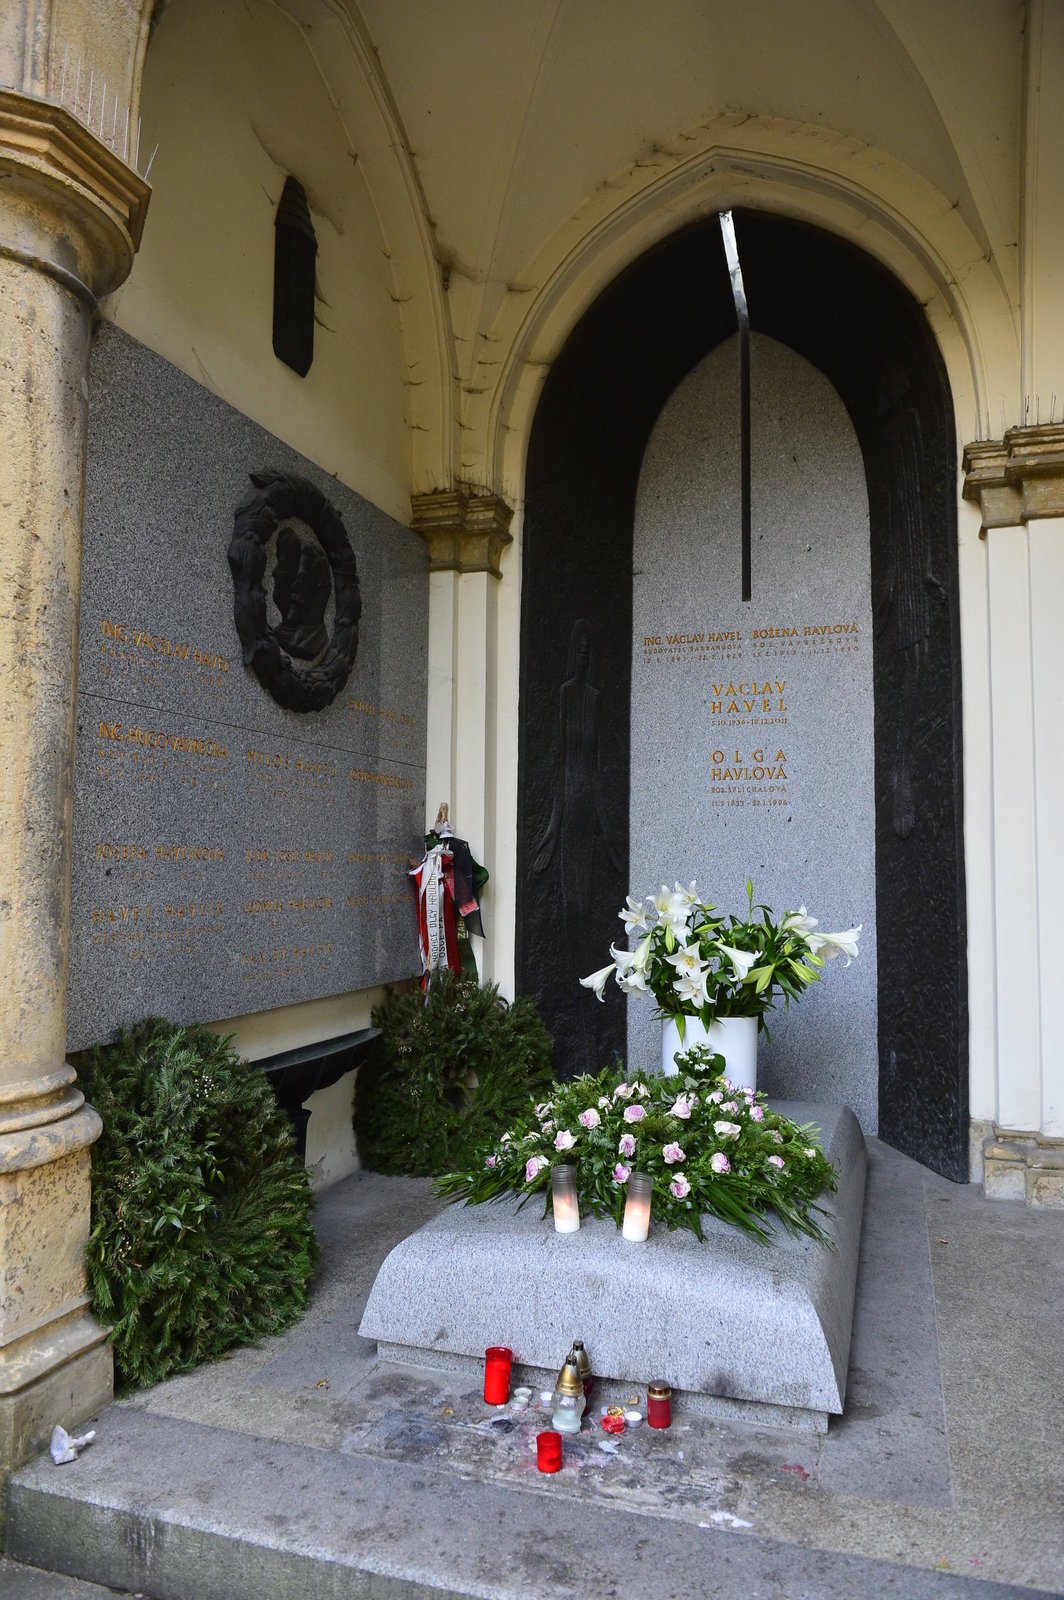 O hrob je postaráno Na rozdíl od Hrádečku je o hrob Václava Havla v kapli sv. Václava na pražských Vinohradech vzorně postaráno. Nechybějí čerstvé květiny, svíčky nebo portrét dalajlámy.